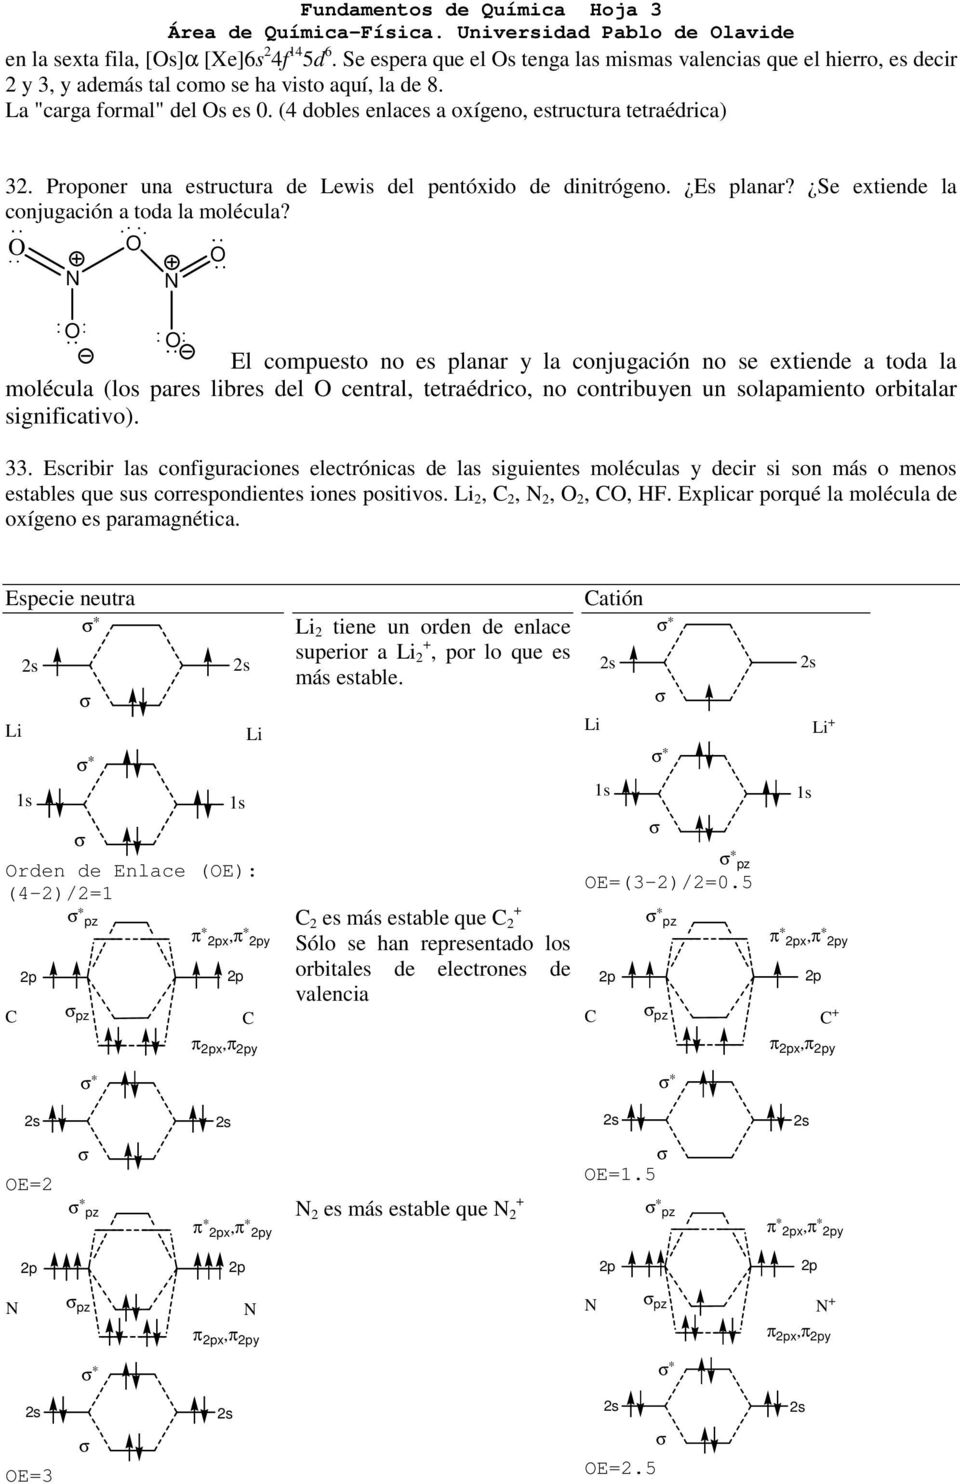 (4 dobles enlaces a oxígeno, estructura tetraédrica) 32. Proponer una estructura de Lewis del pentóxido de dinitrógeno. Es planar? Se extiende la conjugación a toda la molécula?